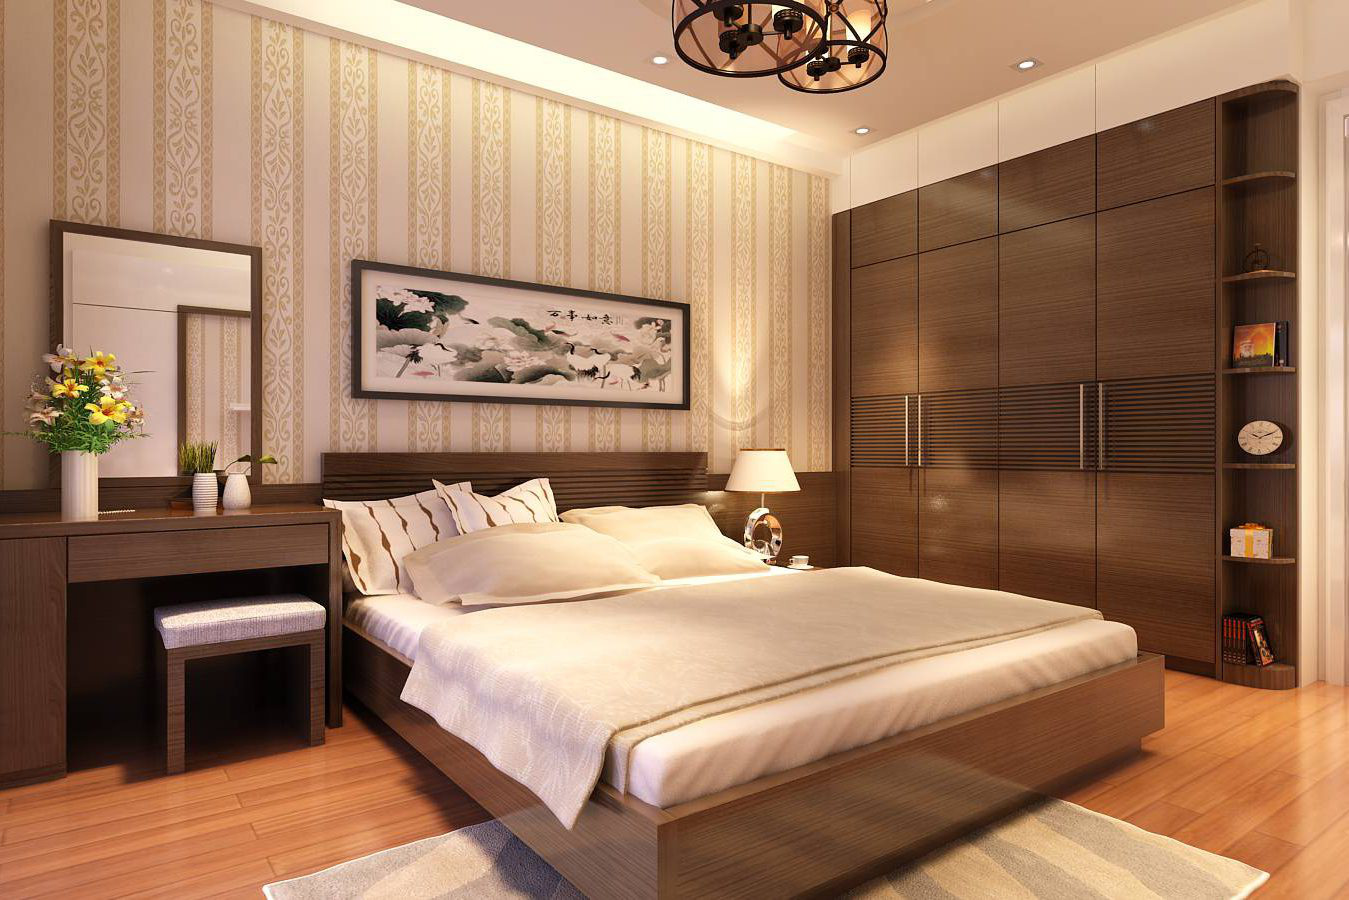  Phòng ngủ hiện đại sang trọng với sàn gỗ ấm áp.